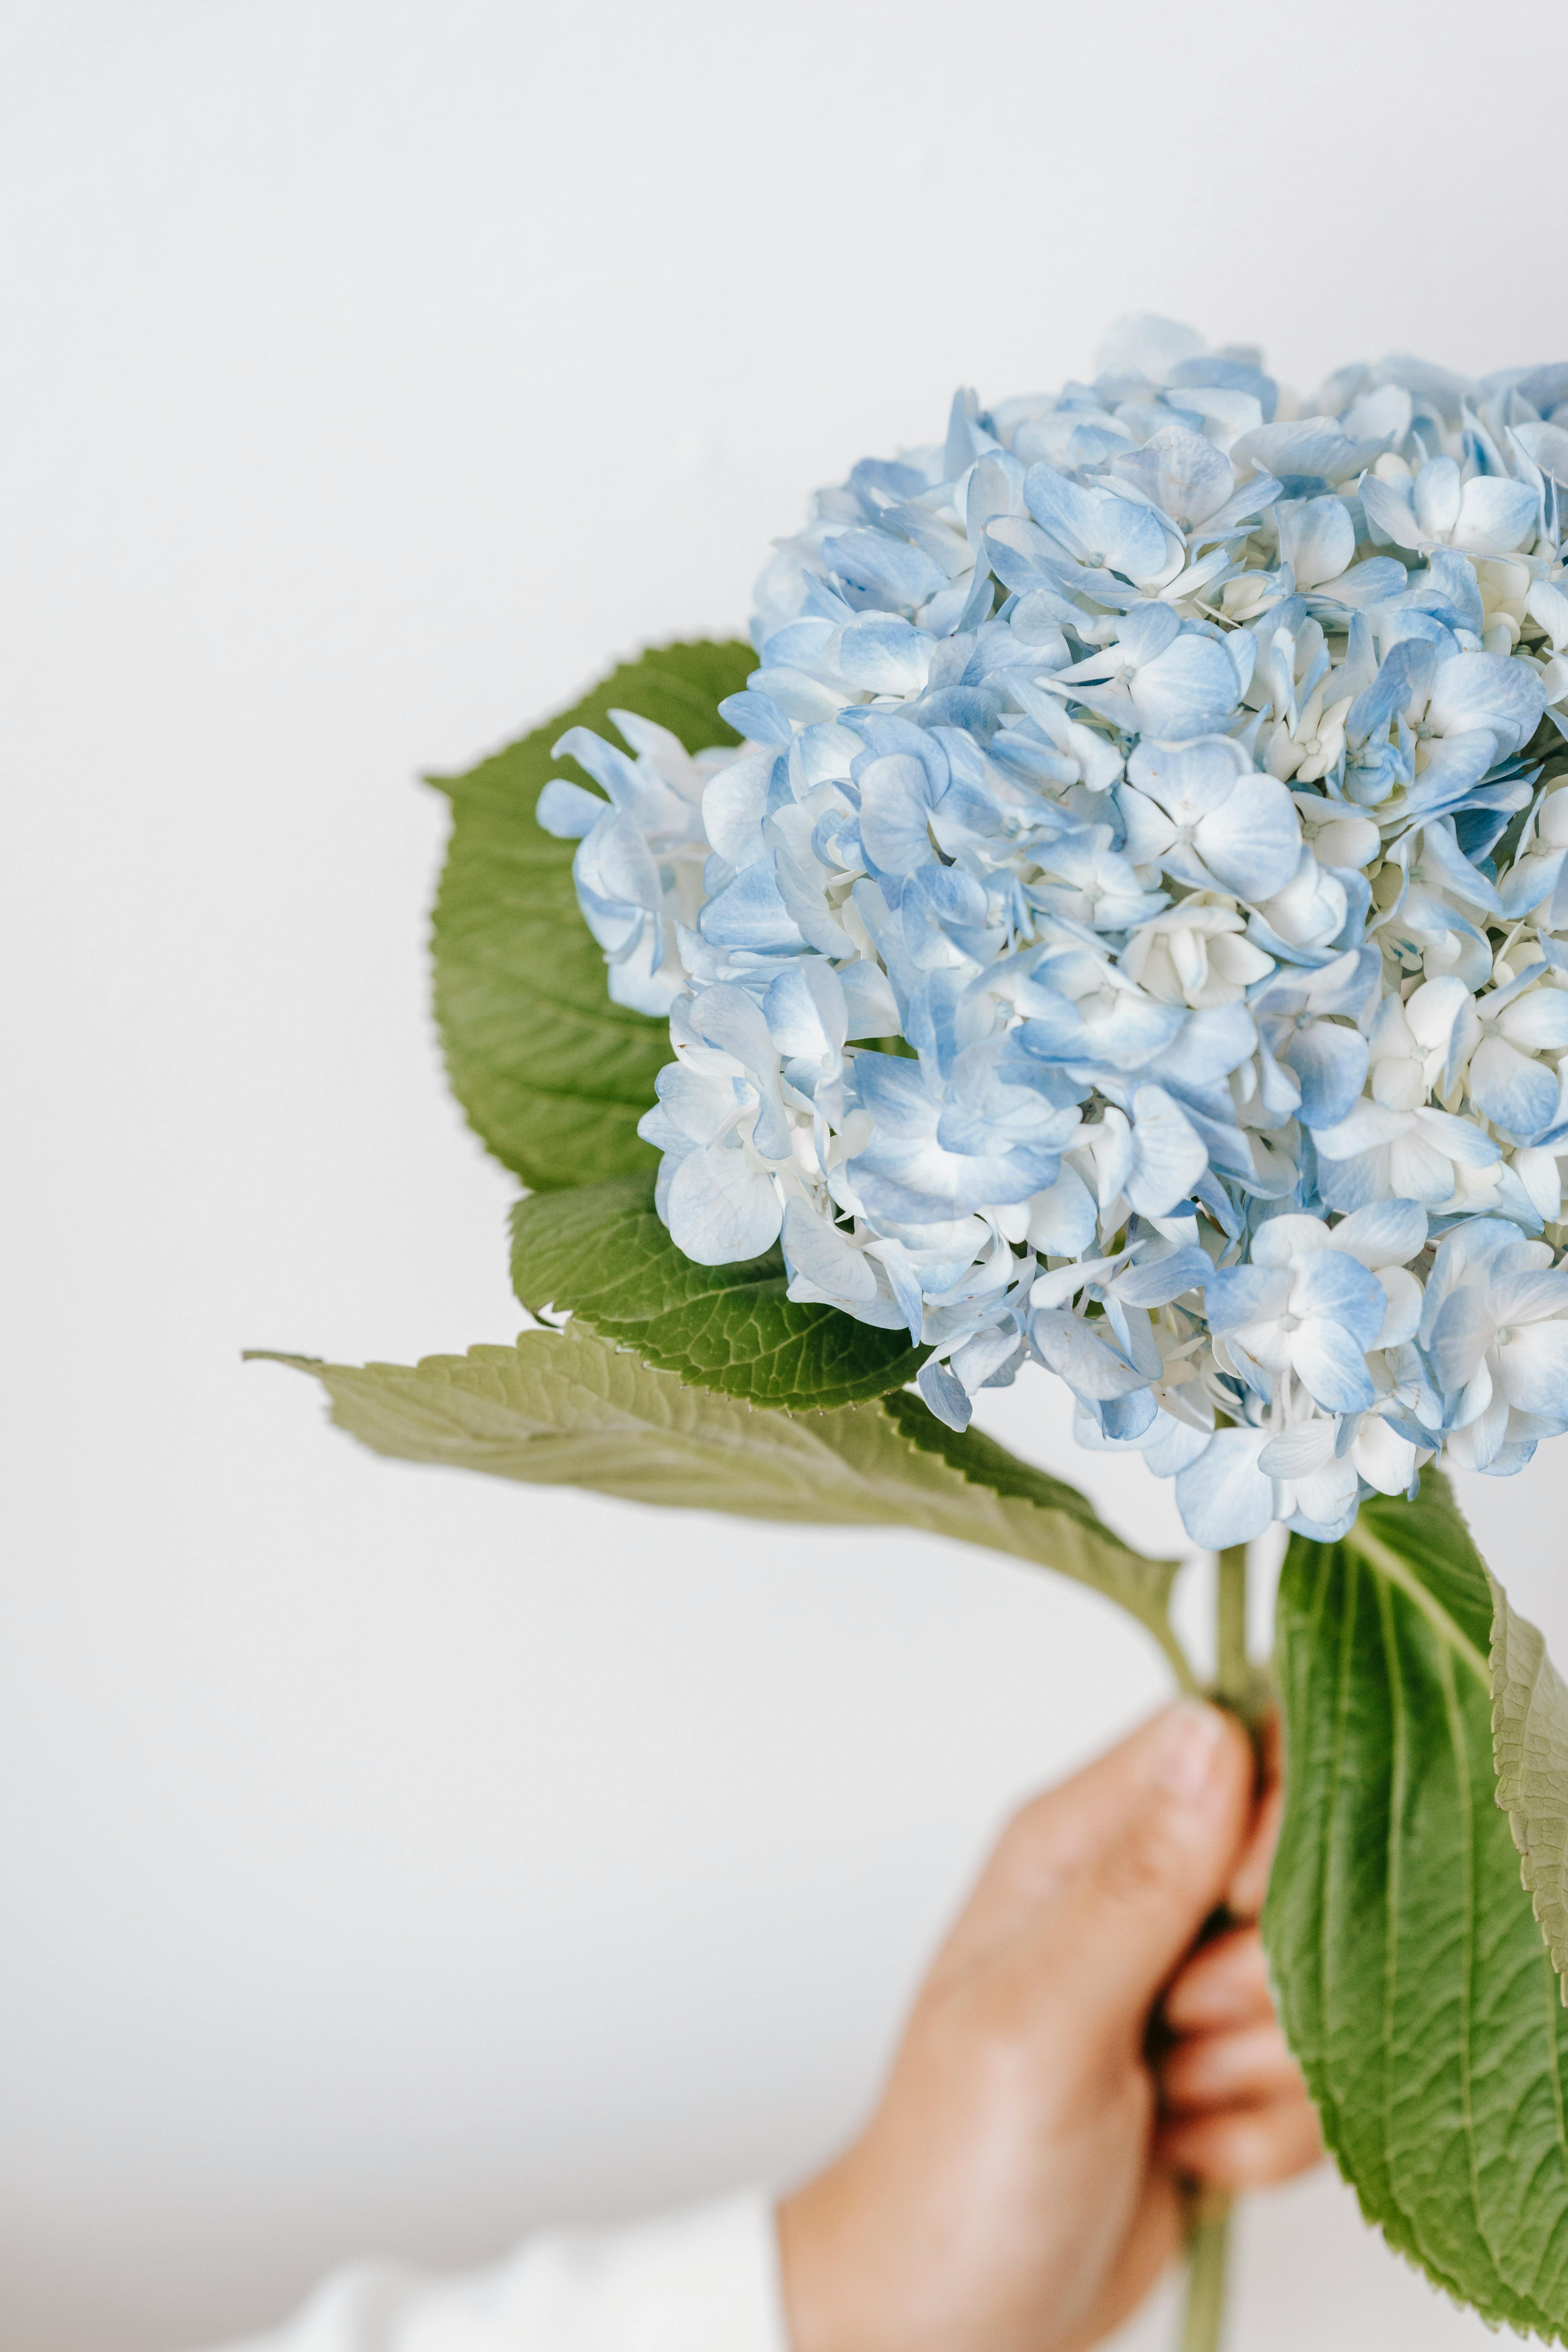 Với những bức ảnh đẹp hoa cẩm tú cầu, bạn sẽ được nhìn thấy sự hoàn hảo và tuyệt đẹp của loài hoa này. Từng chi tiết nhỏ nhất được tái hiện trọn vẹn và sắc màu càng làm nổi bật vẻ đẹp của loài hoa cẩm tú cầu.